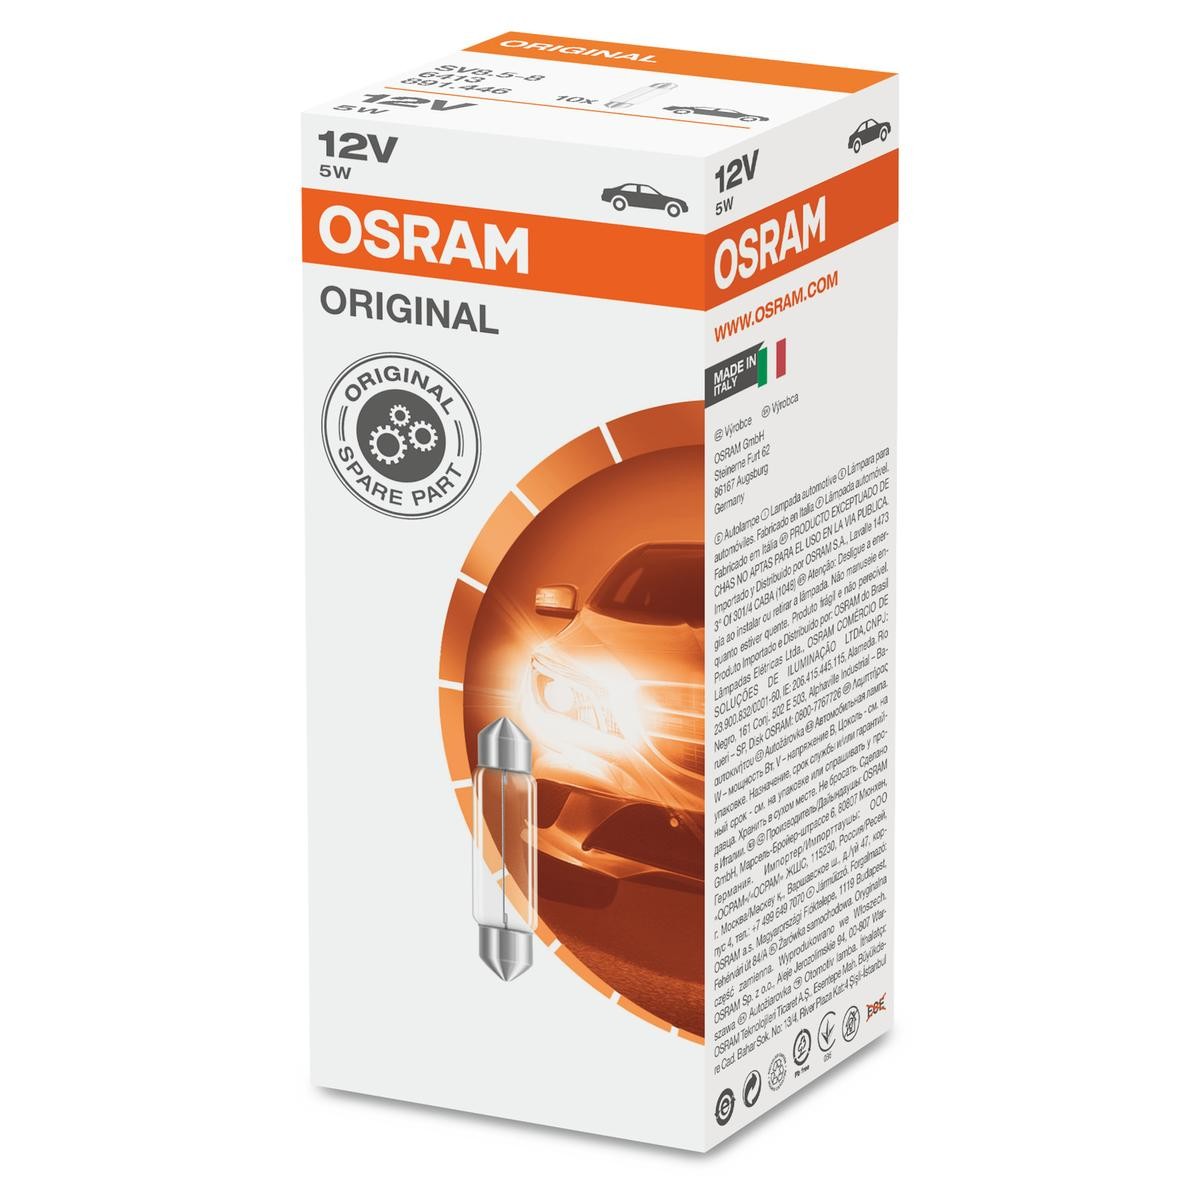 OSRAM ORIGINAL LINE 6413 Bulb, interior light Socket Bulb, 12V, 5W